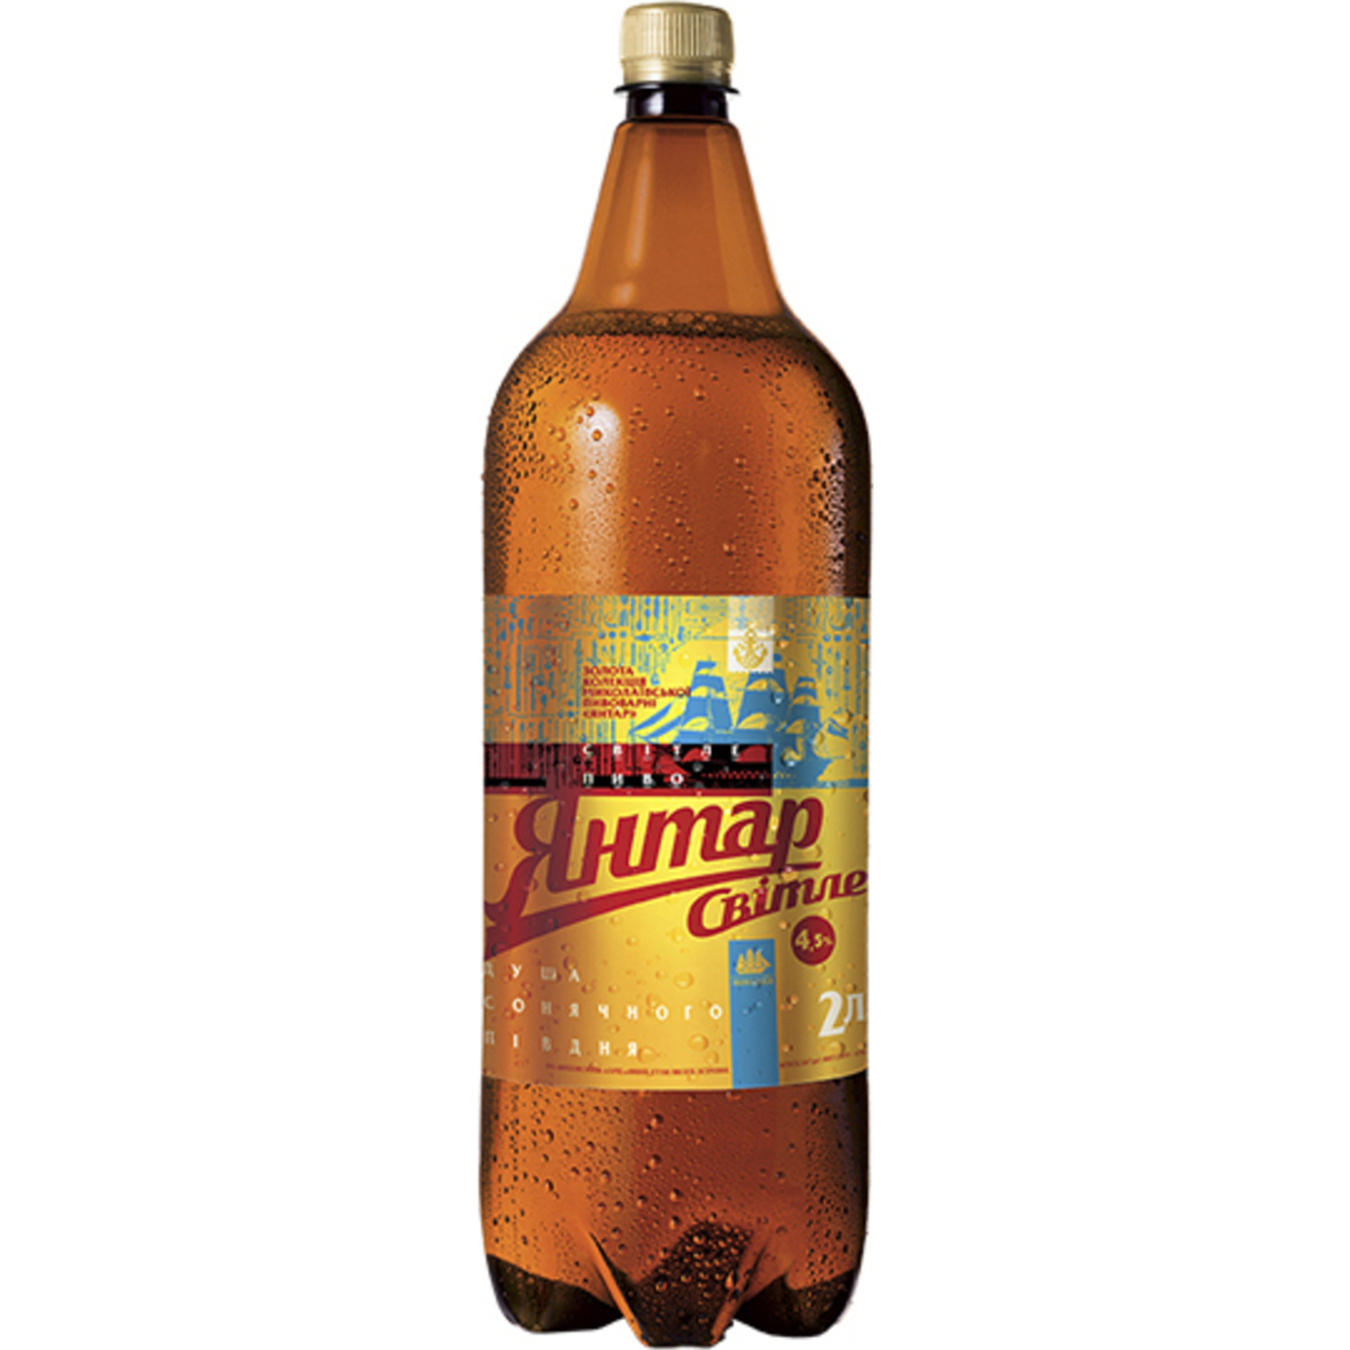 Light beer Amber 4.5% 2 l